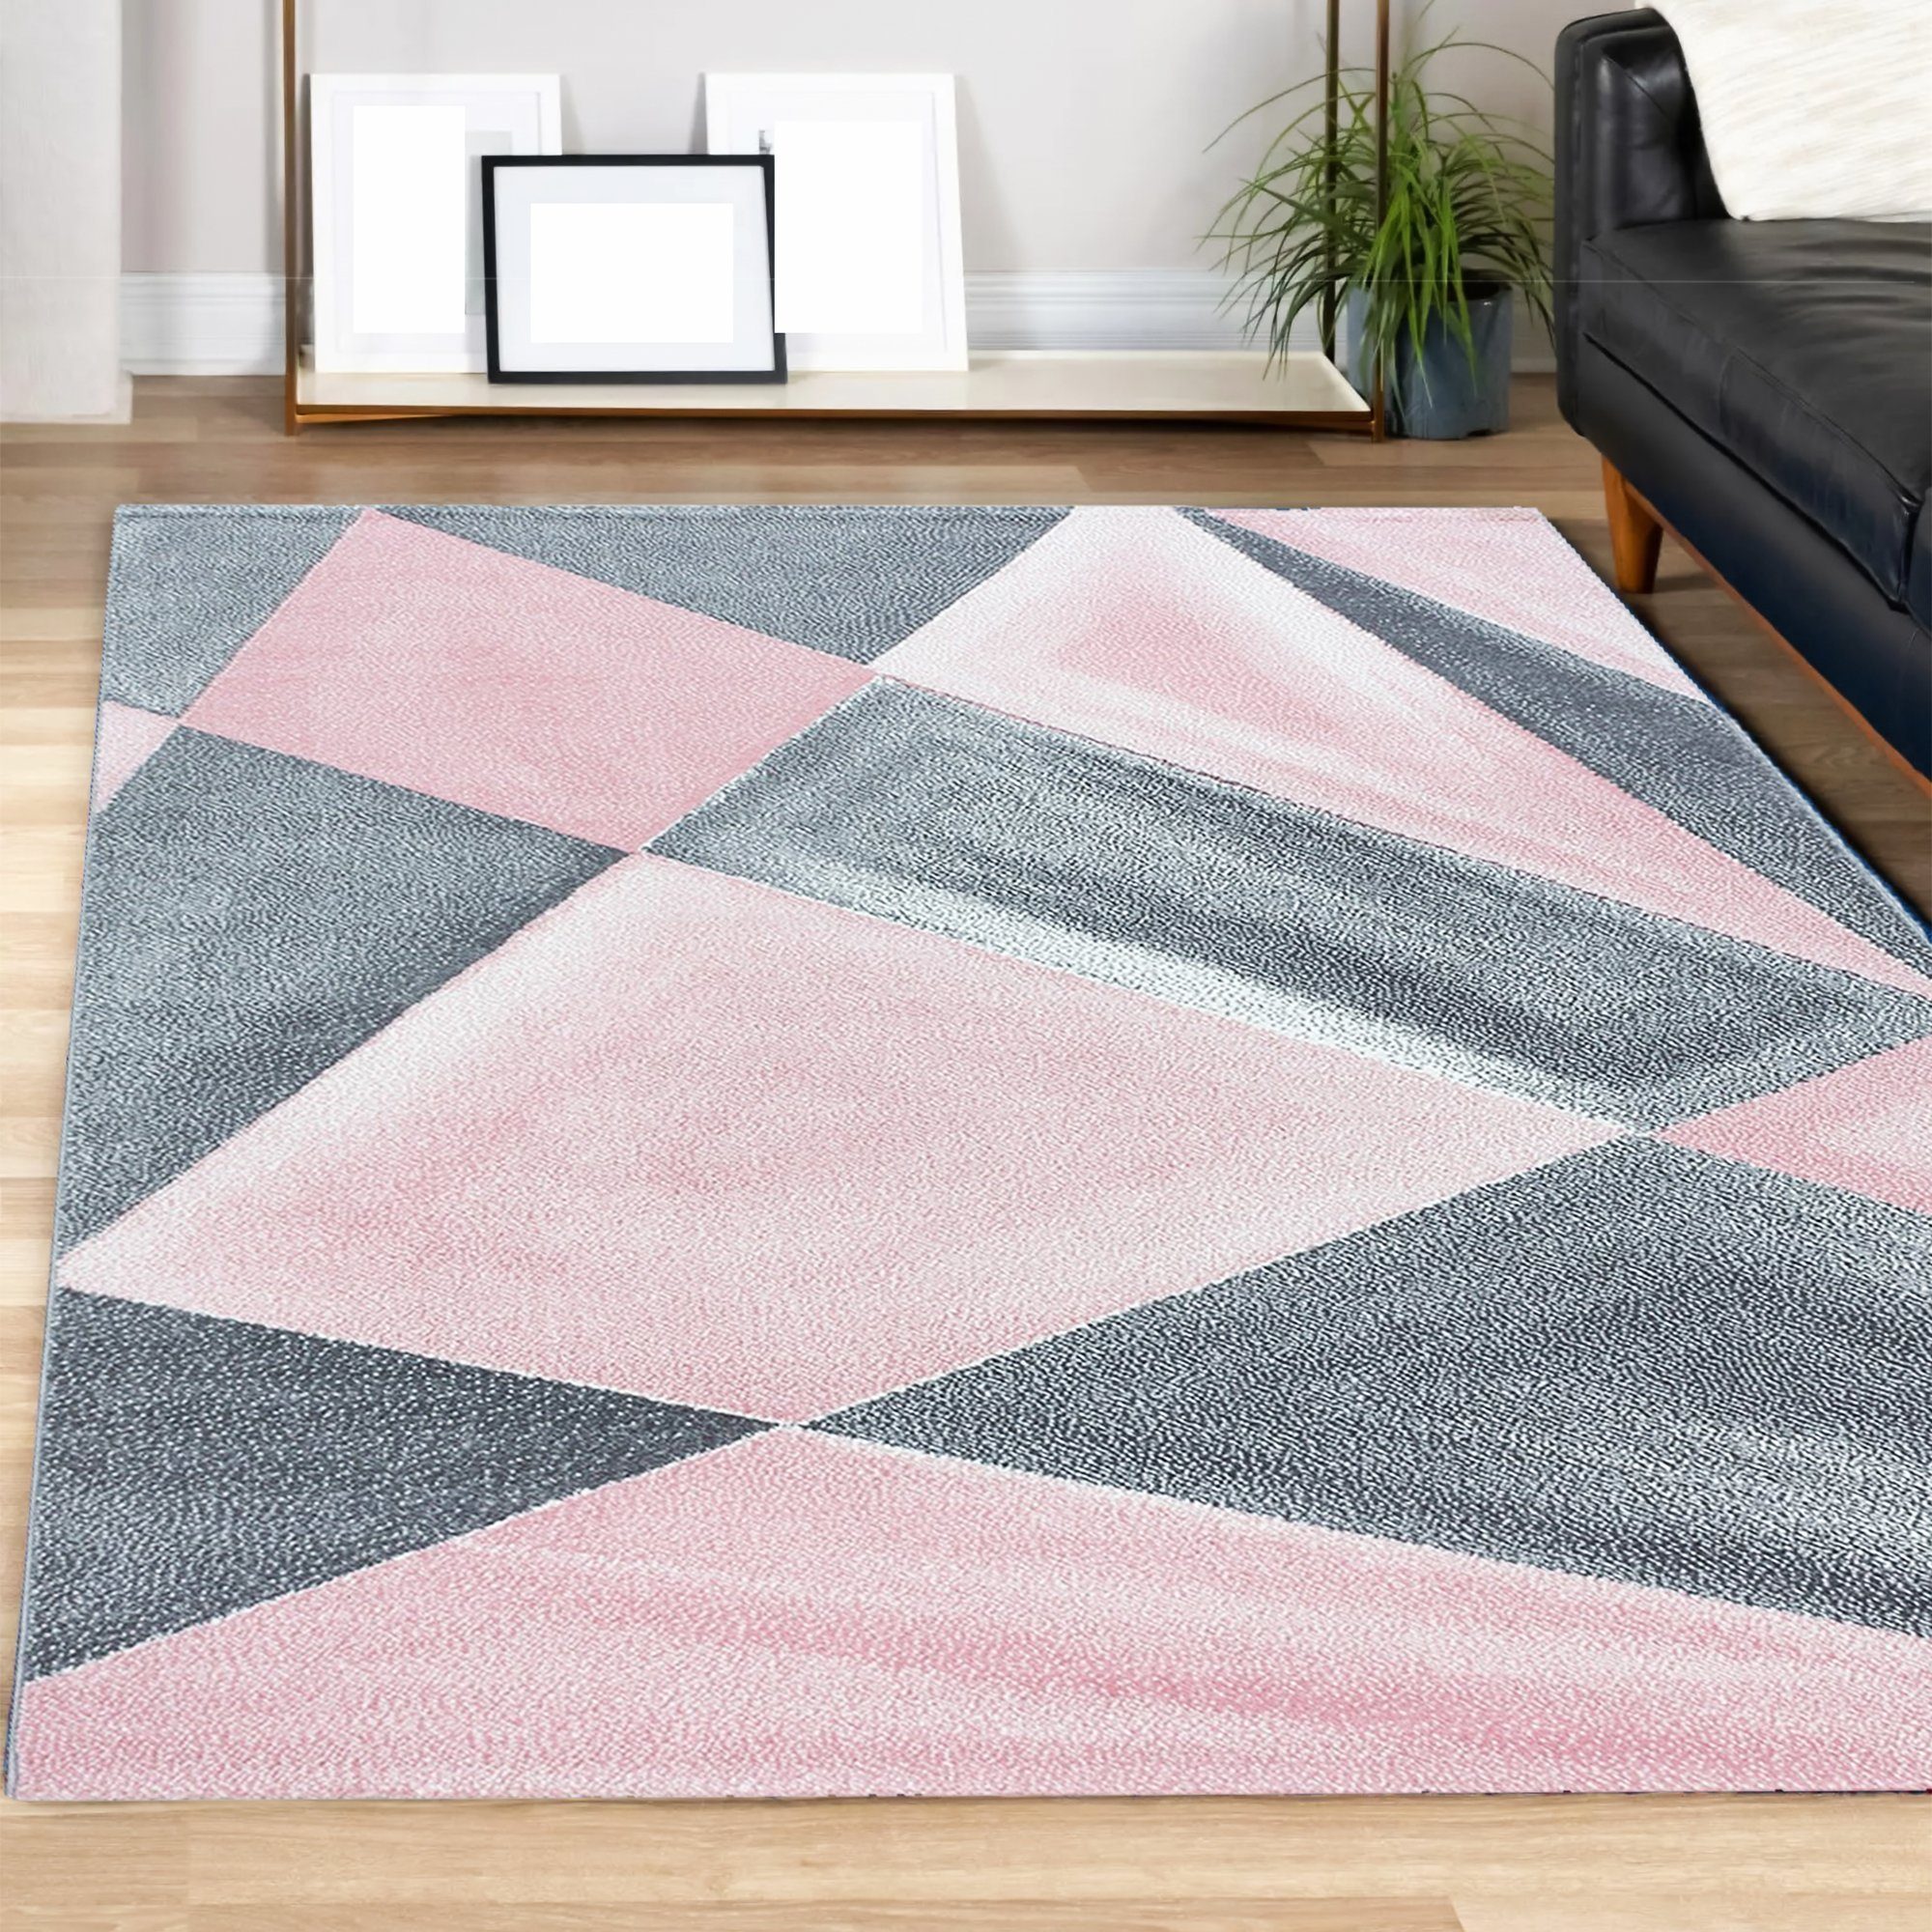 Designteppich Kurzflorteppich Designerteppich Wohnzimmer Schlafzimmer, Pink Miovani Mosaikoptik